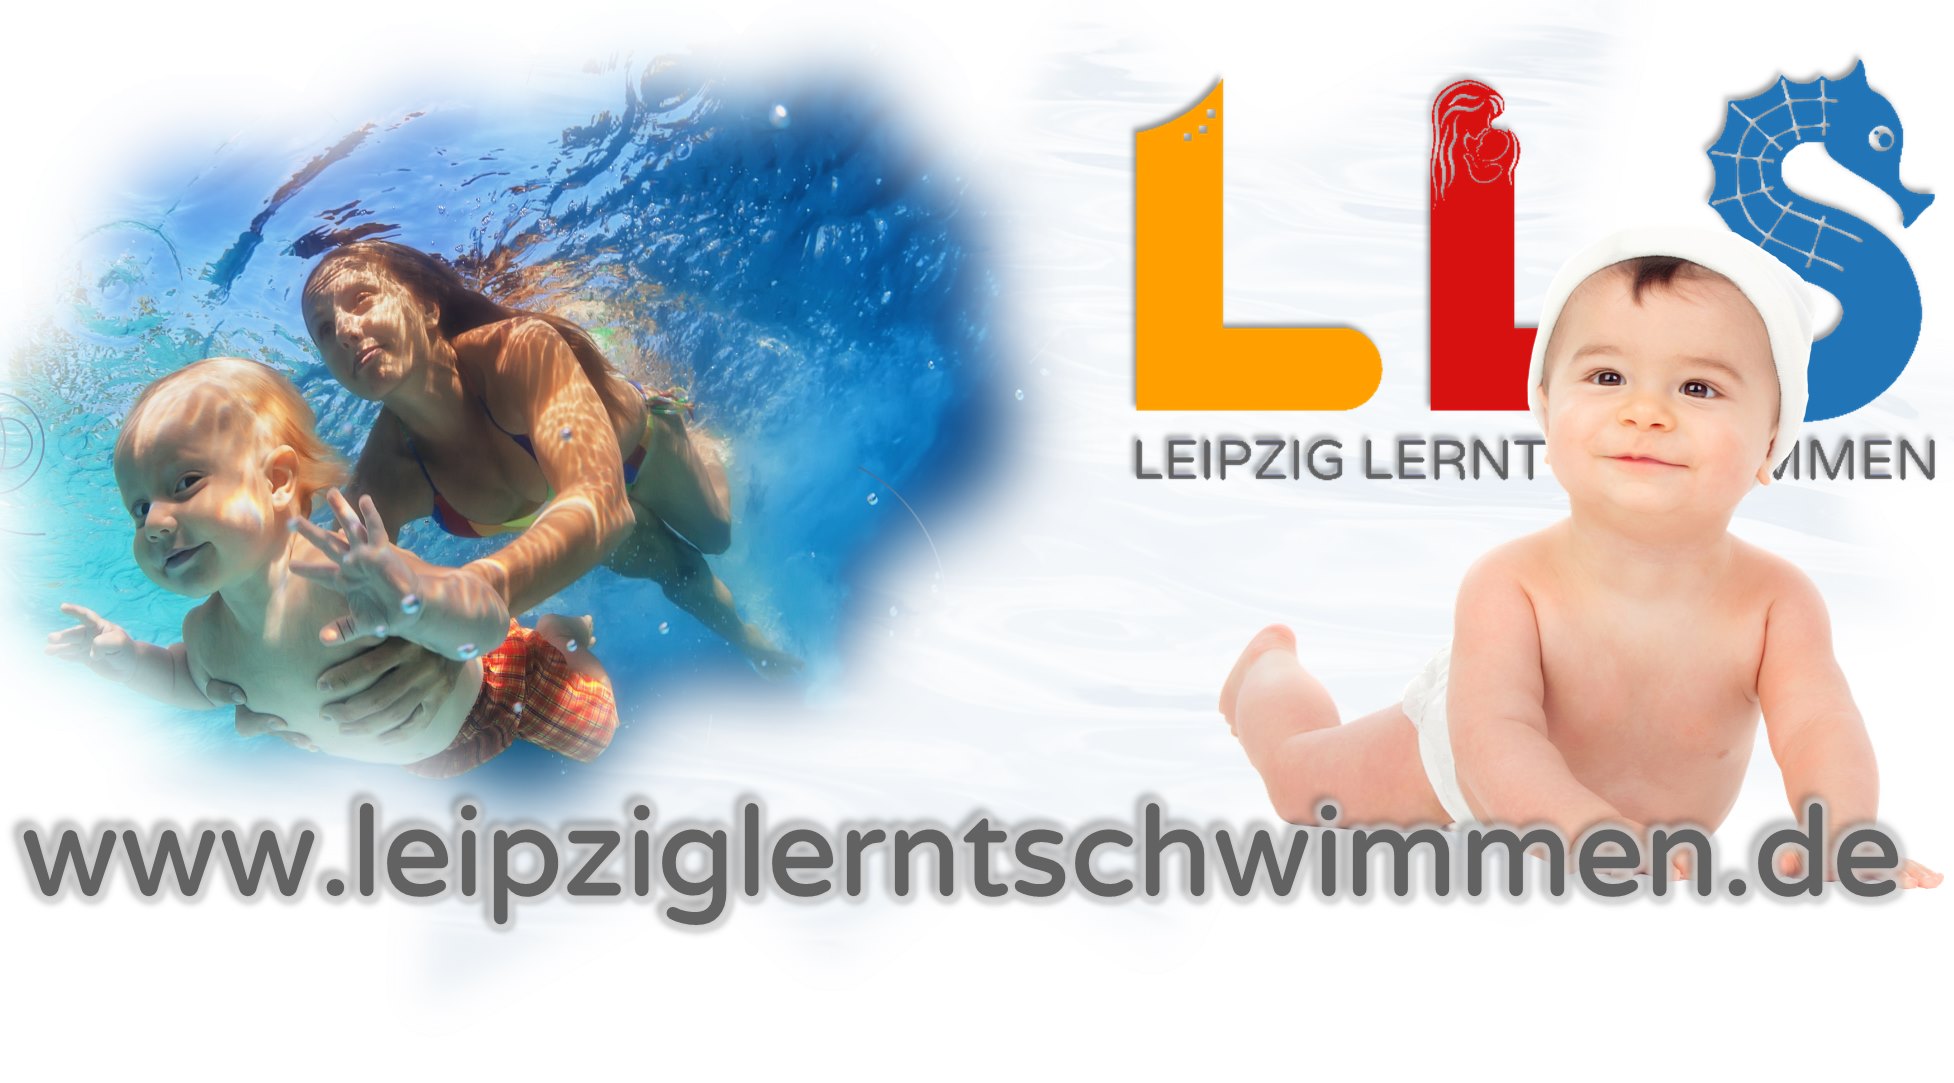 Leipziglerntschwimmen